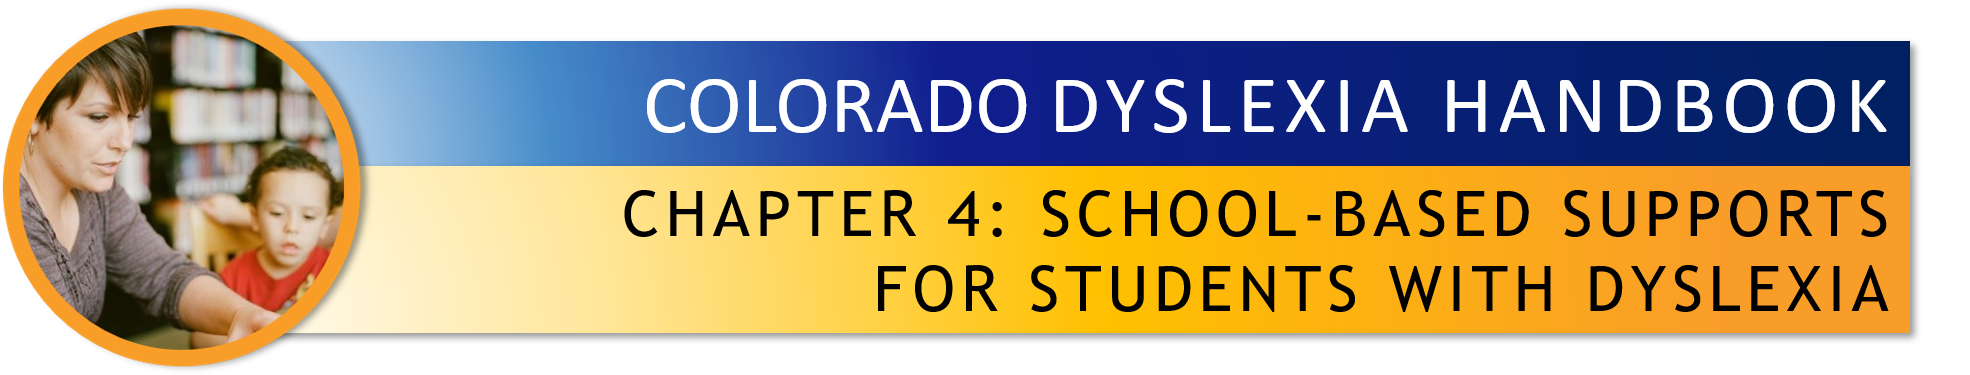 Chapter 4 of Colorado Dyslexia Handbook